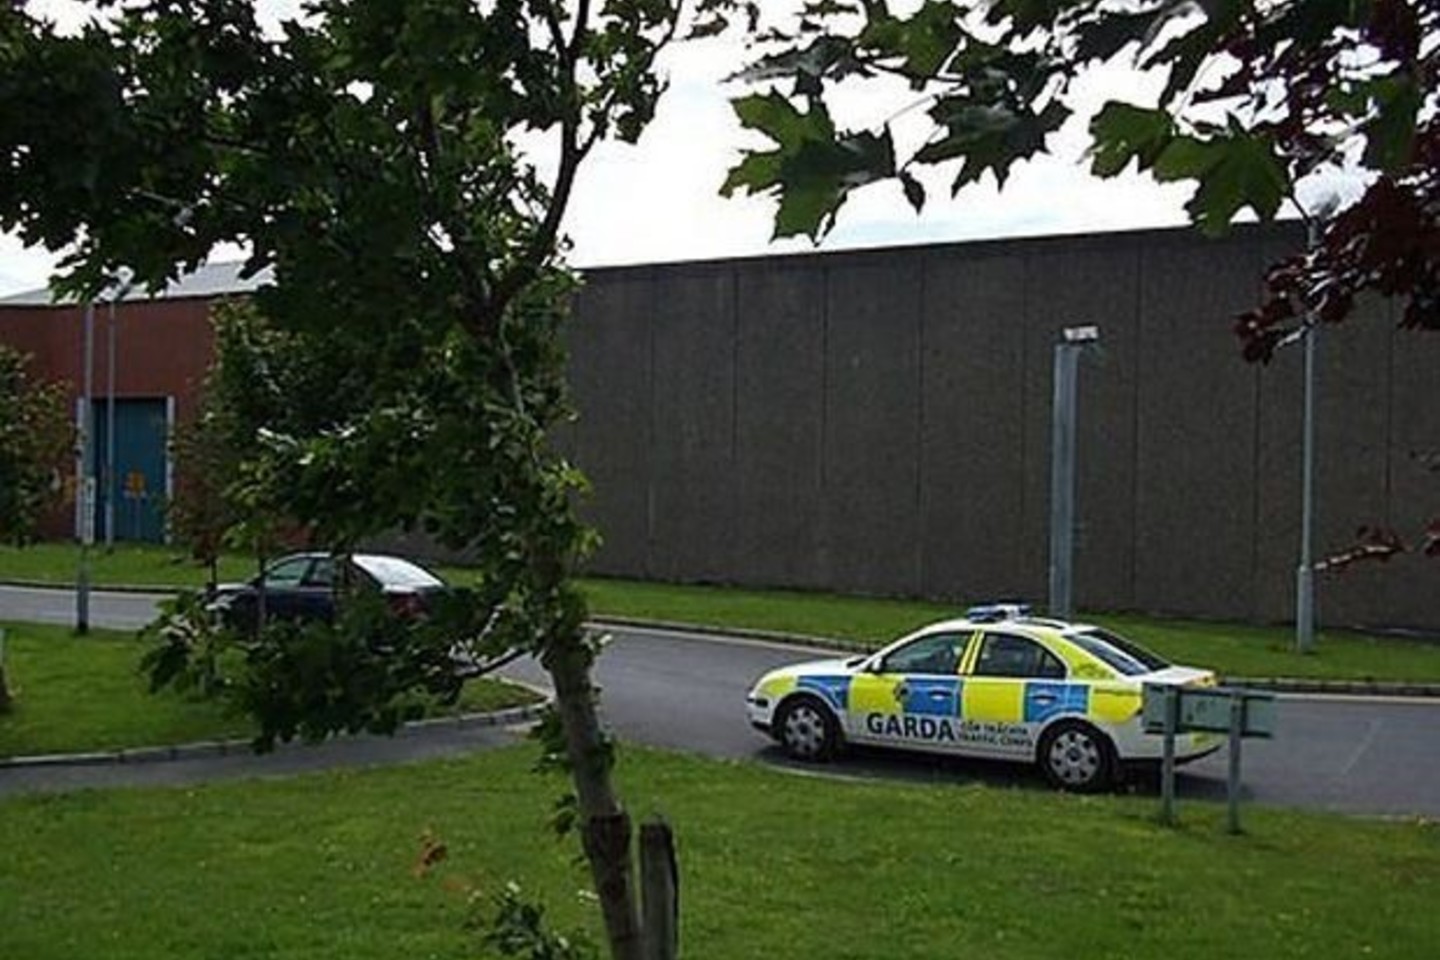 Airijos policija (Garda) patvirtino, kad nukentėjęs vyras yra lietuvis, ir čia gyvena jo šeima, kuriai apie įvykį buvo pranešta.<br>lrytas.lt nuotr.